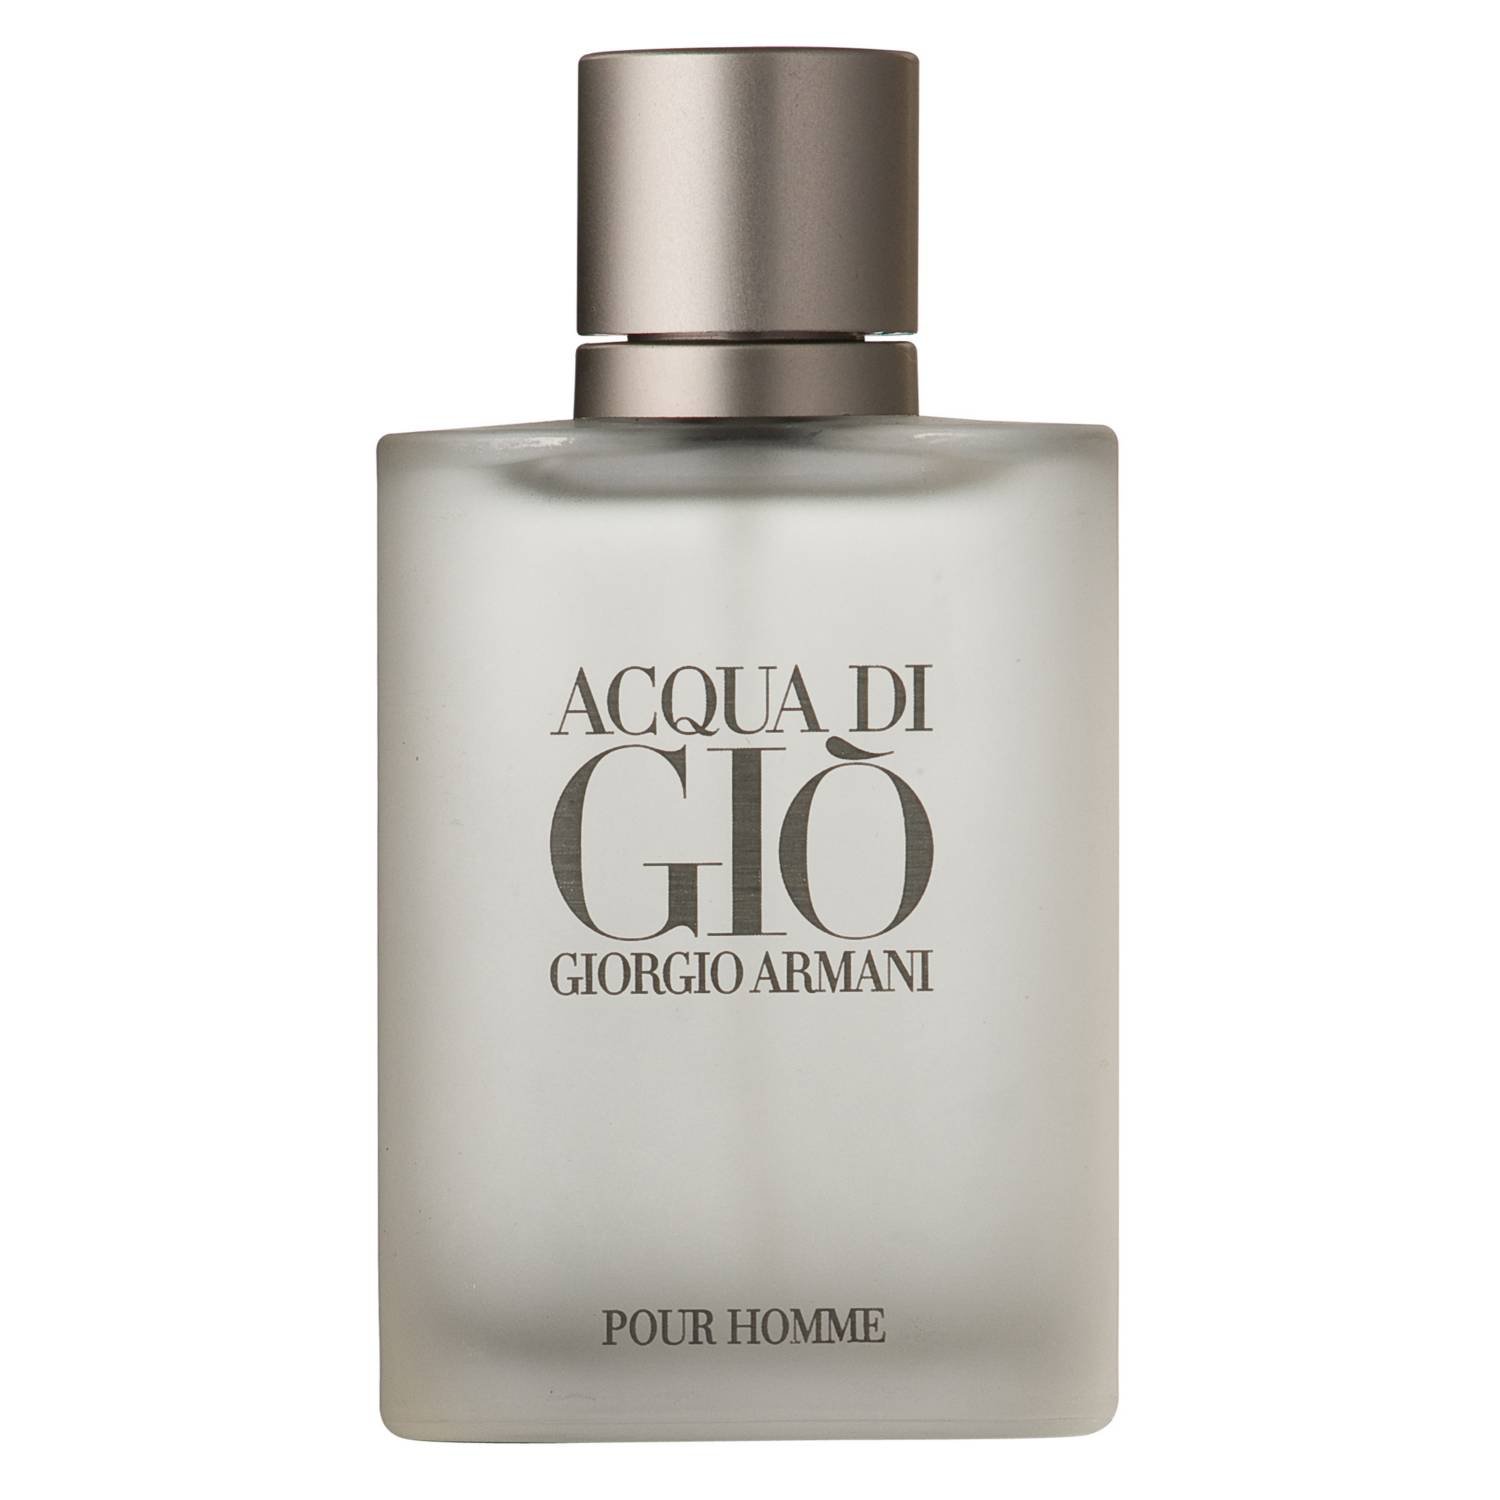 Acqua di Gio Hombre de Giorgio Armani - Perfumes Online | Venta de ...